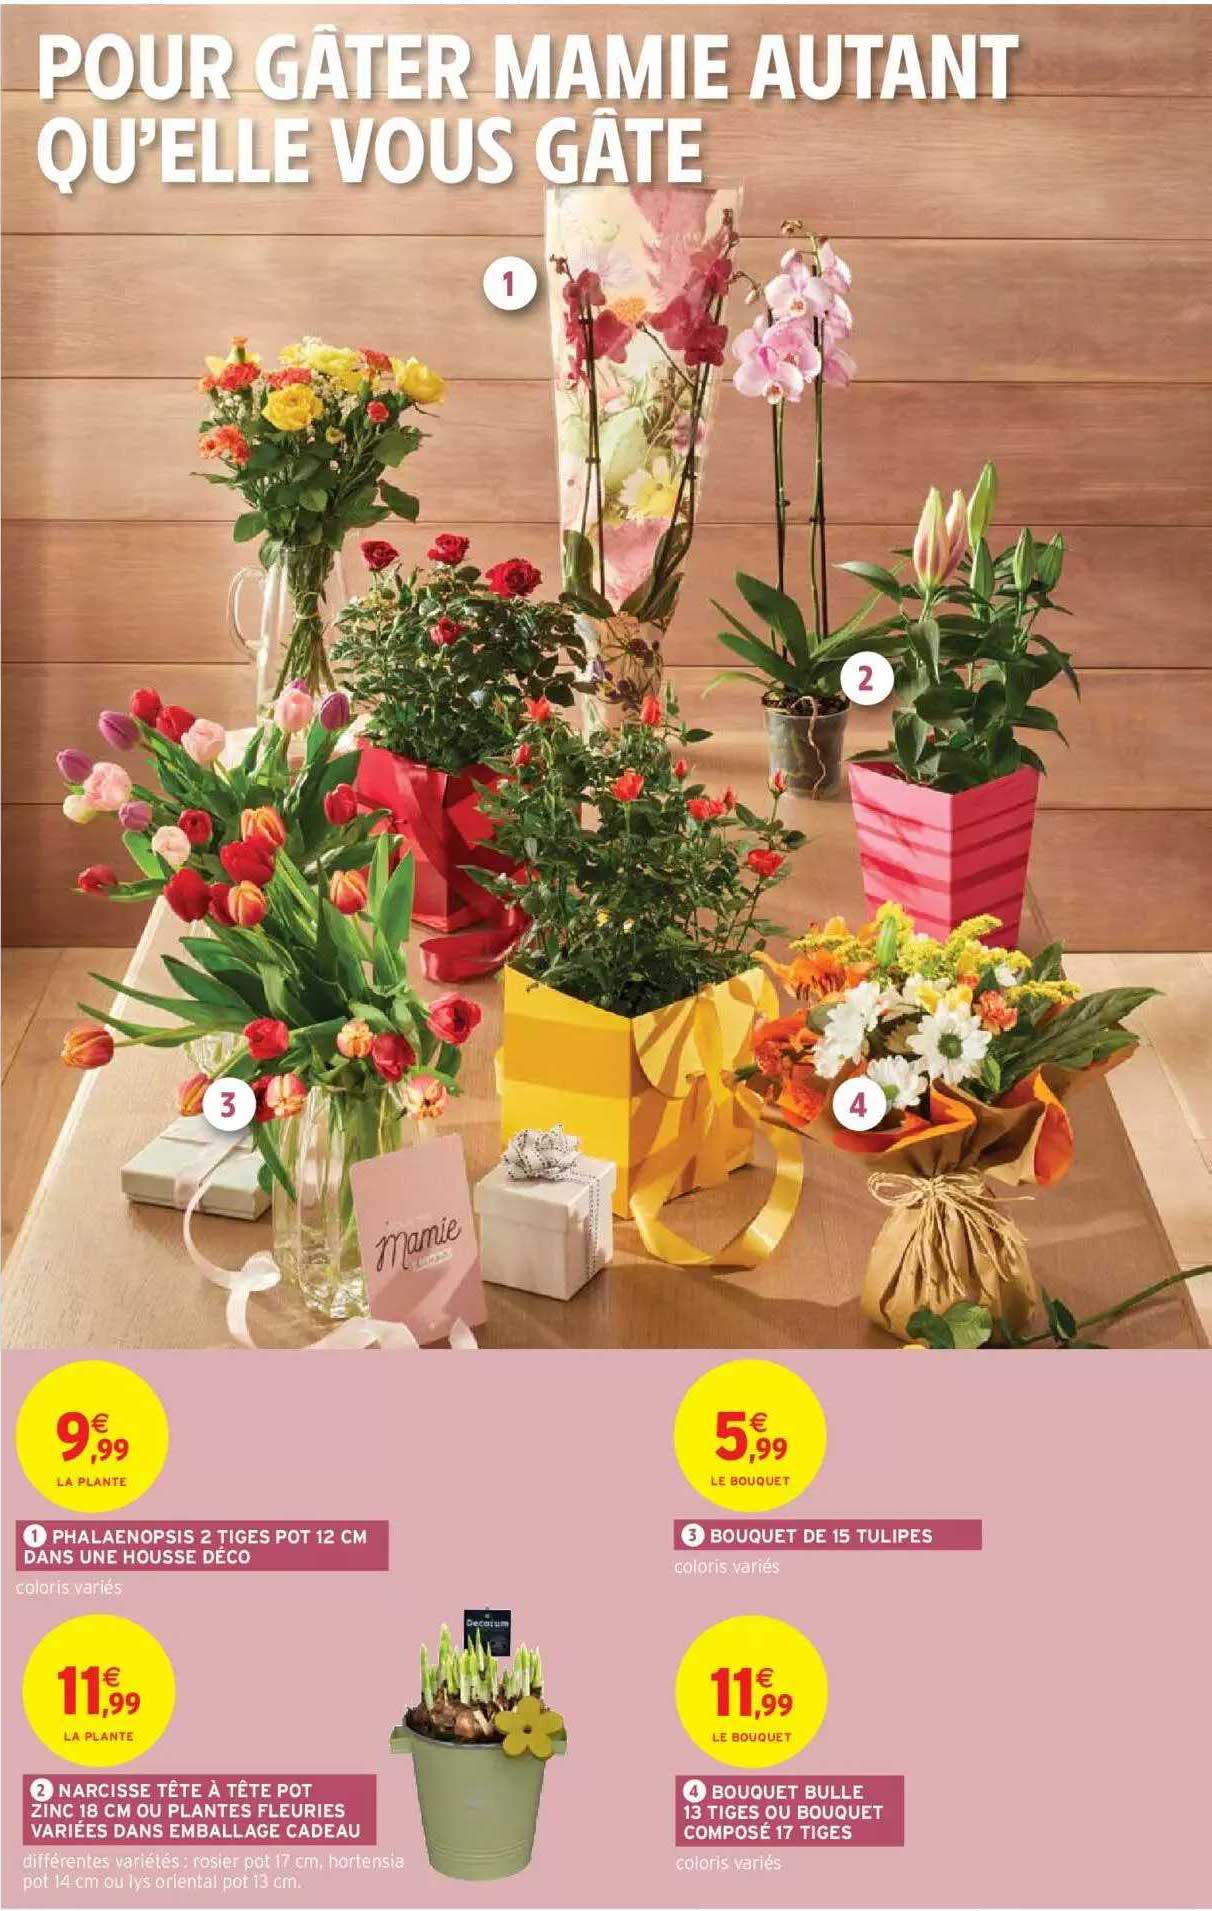 Offre Phalaenopsis 2 Tiges Pot 12 Cm Dans Une Housse Déco, Bouquet De 15  Tulipes, Narcisse Tête à Tête Pot Zinc 18 Cm Ou Plantes Fleuries Variées  Dans Emballage Cadeau, Bouquet Bulle